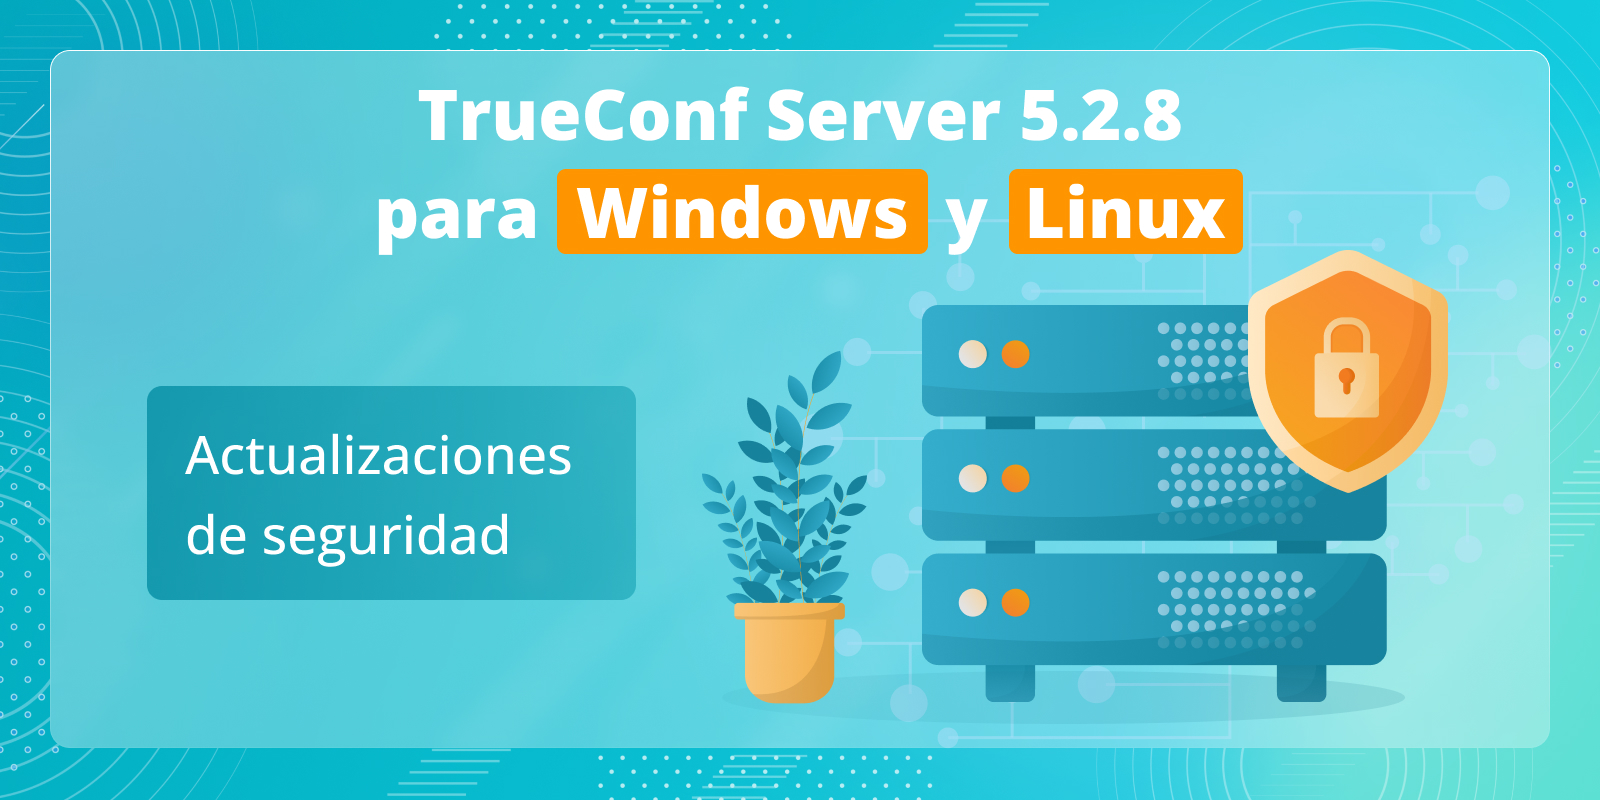 TrueConf Server 5.2.8: Actualizaciones de seguridad 3